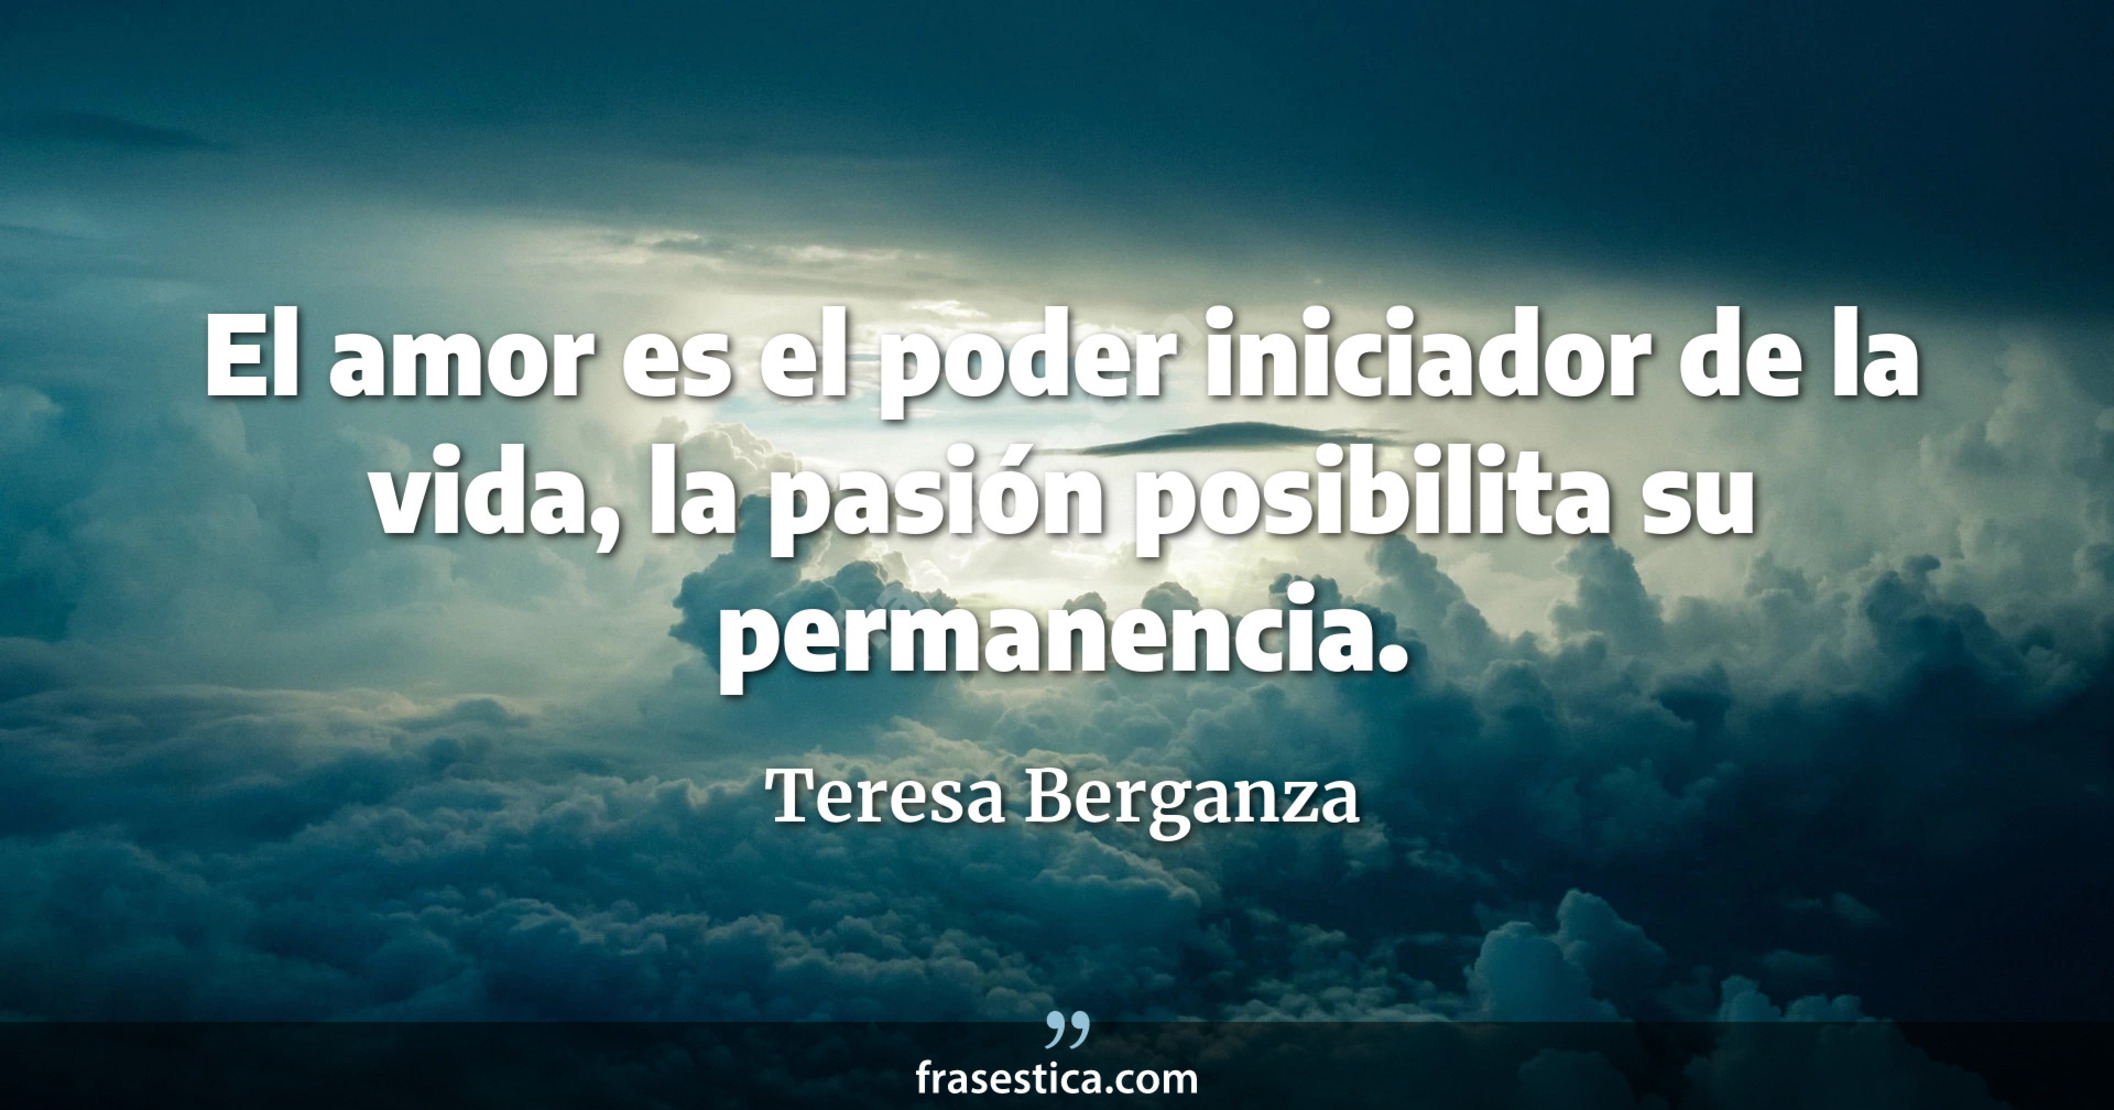 El amor es el poder iniciador de la vida, la pasión posibilita su permanencia. - Teresa Berganza